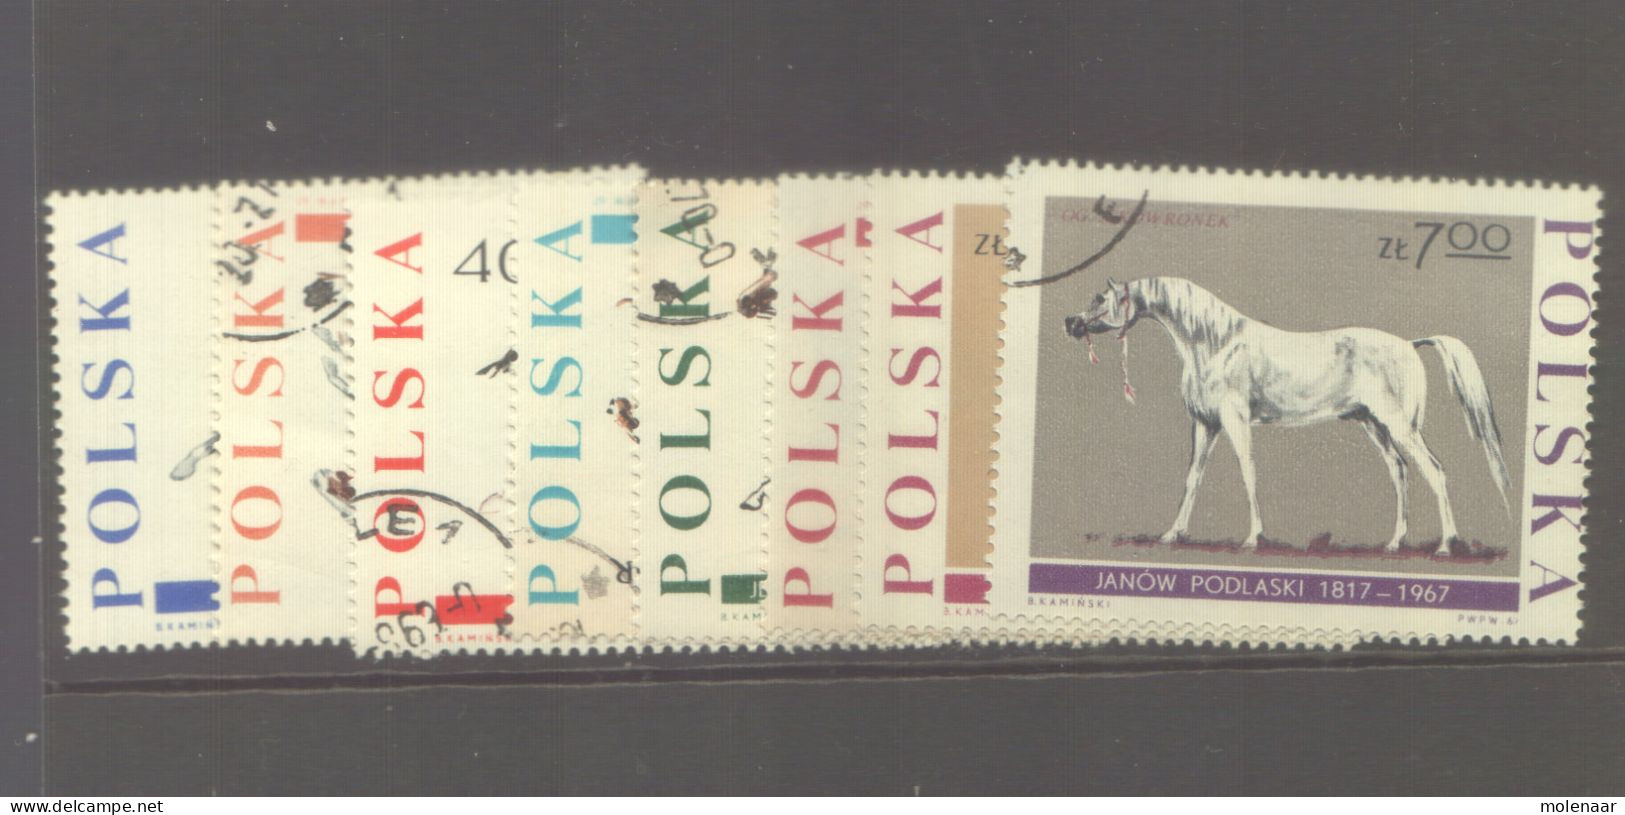 Postzegels > Europa > Polen > 1944-.... Republiek > 1961-70 > Gebruikt No. 1734-1741 (11994) - Oblitérés